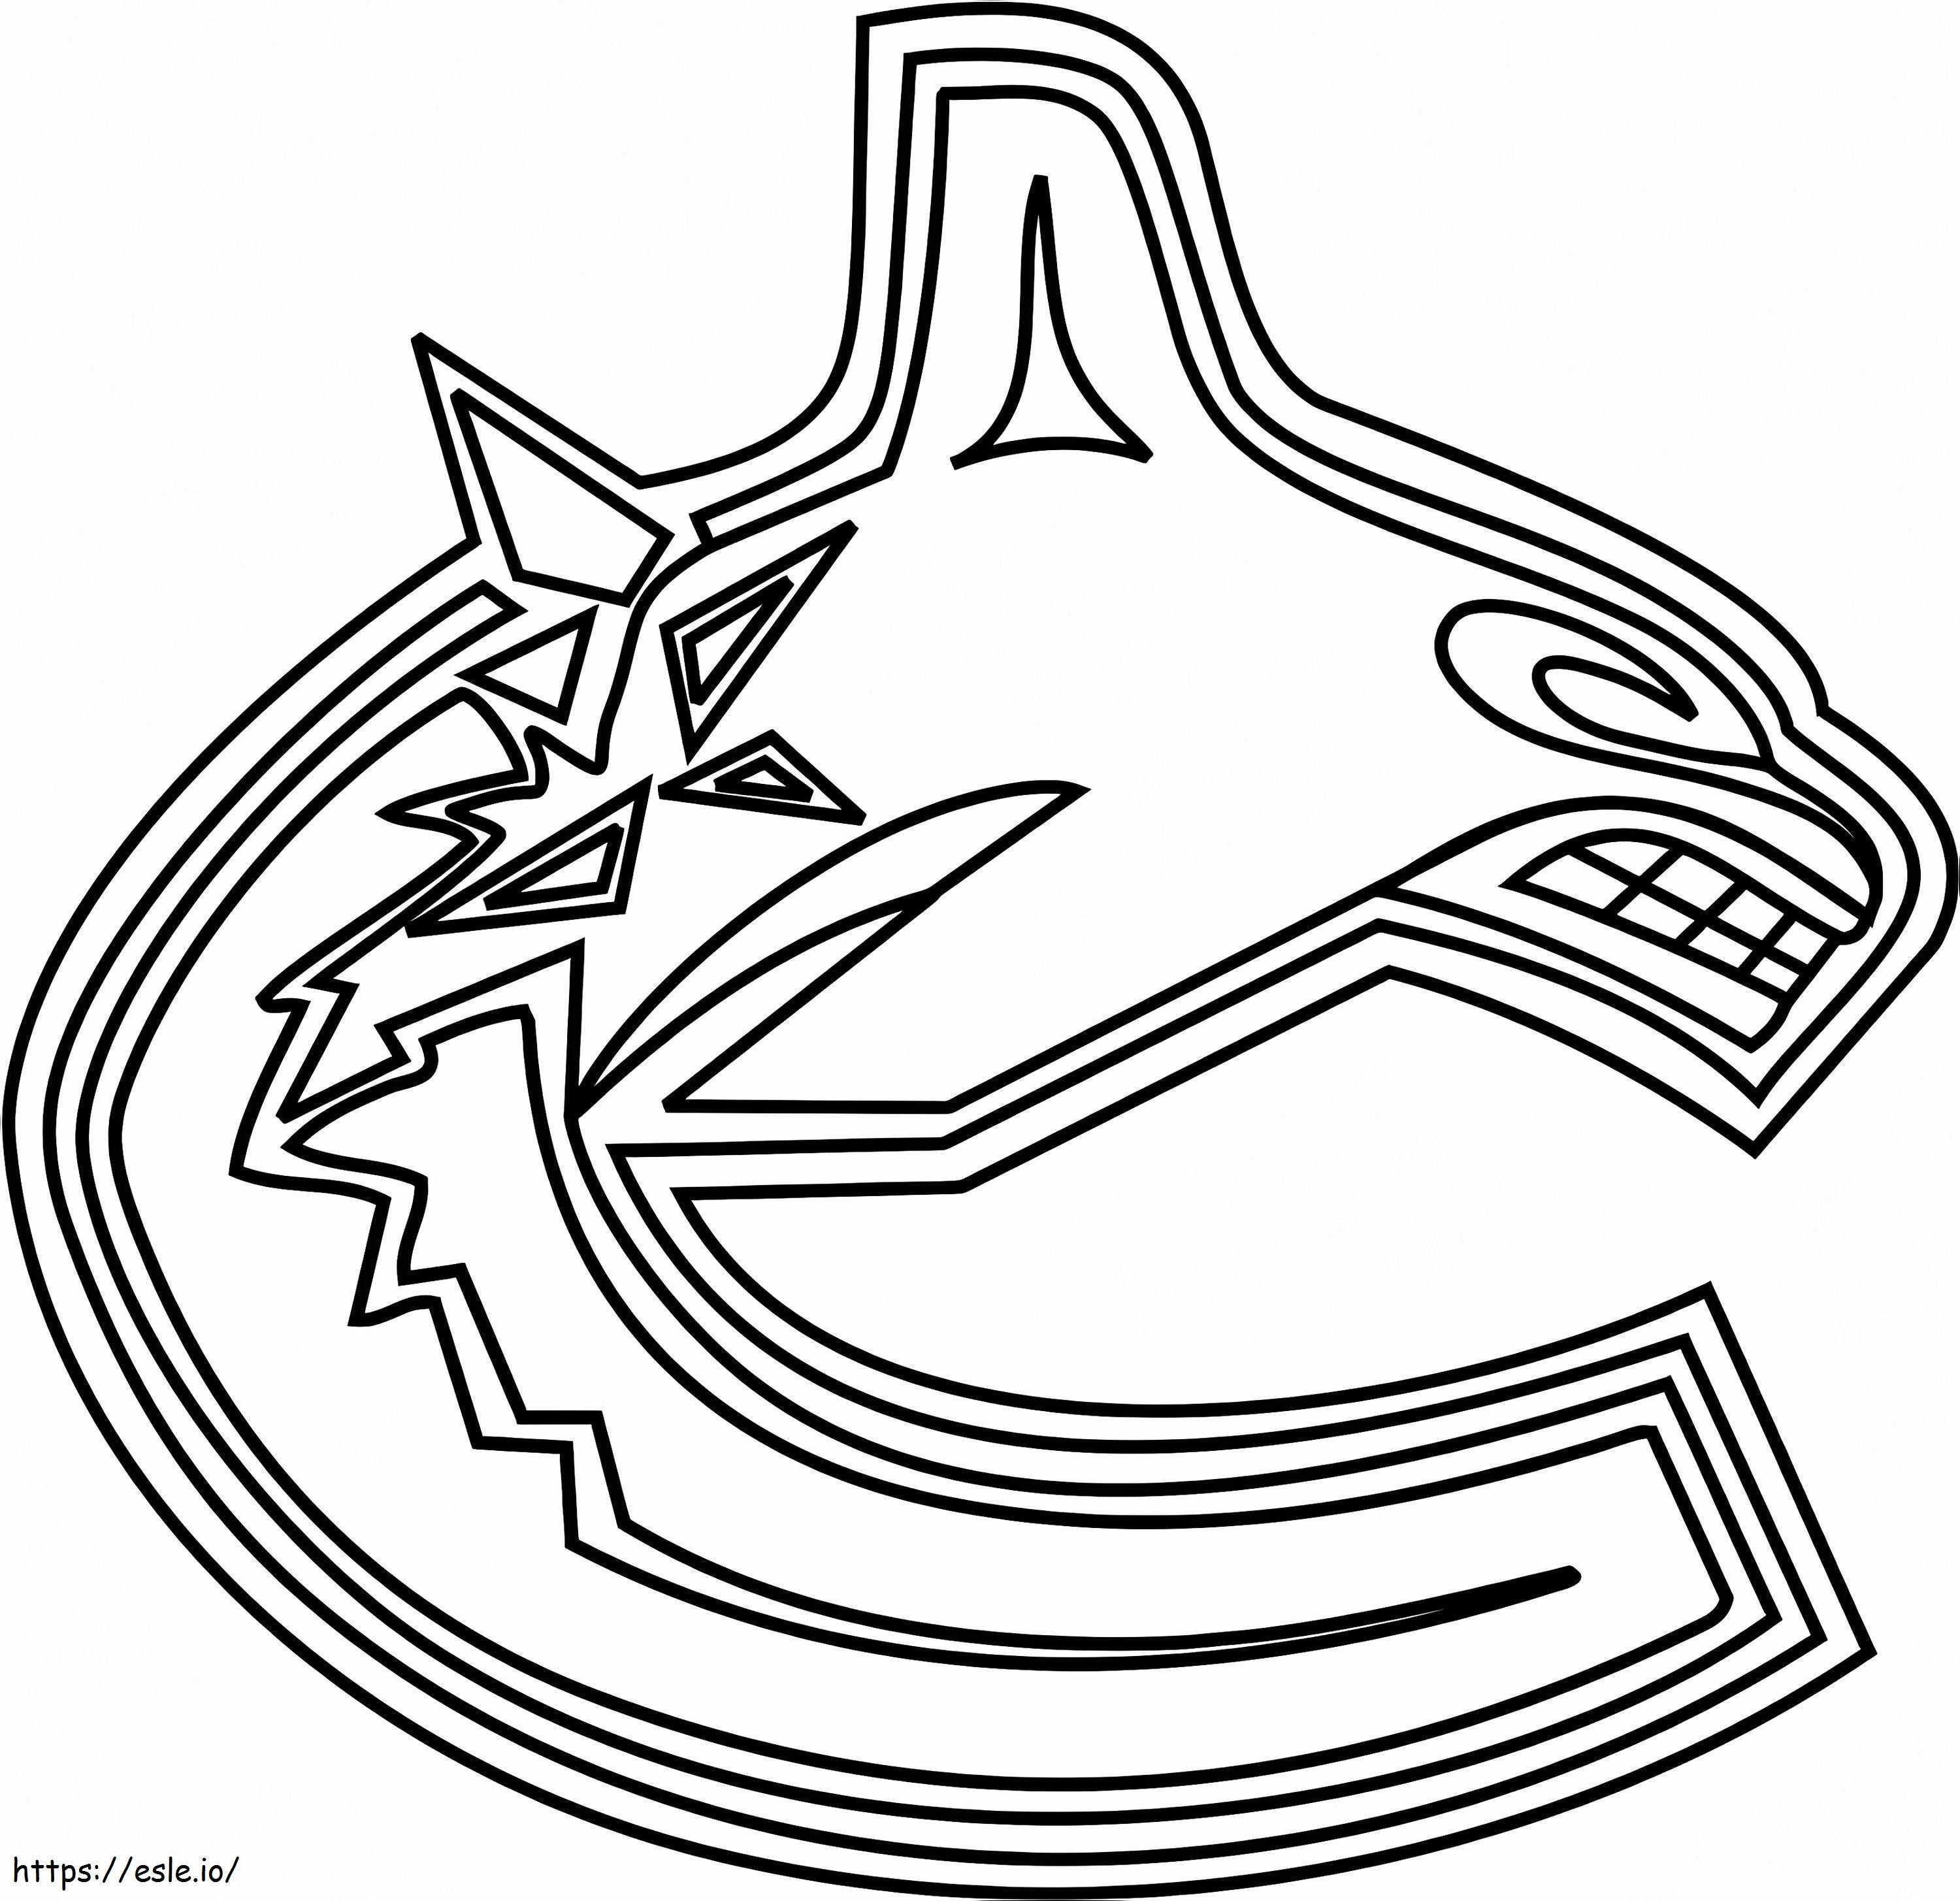 Logo dei Vancouver Canucks da colorare